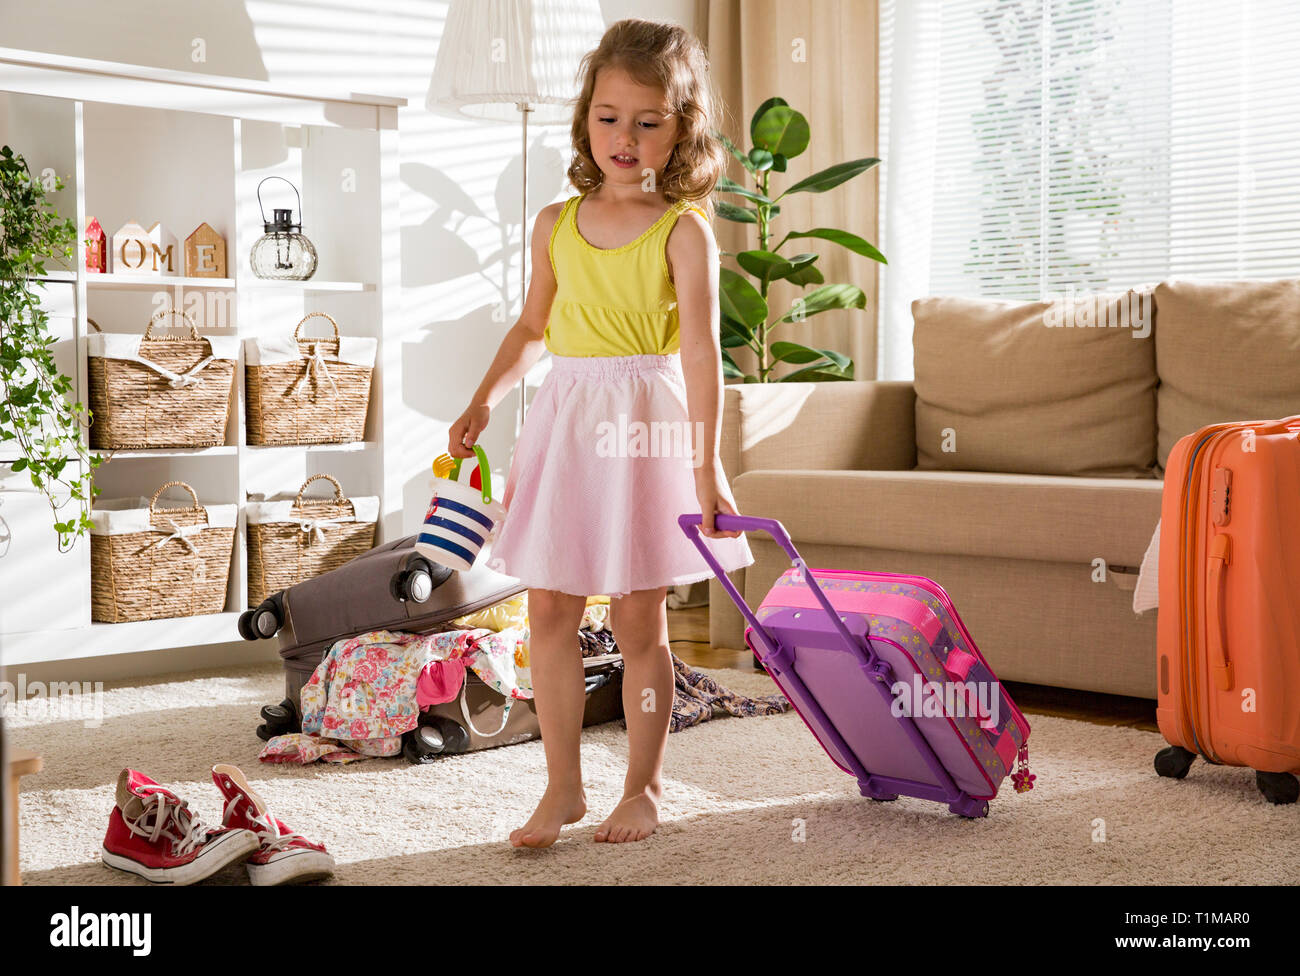 Gerne kleine Mädchen im Wohnzimmer zu Hause sitzen, sorgfältig verpacken  bunten Sommer Kleidung und Spielzeug in Gepäck, Koffer für eine neue Reise.  Kinder-T Stockfotografie - Alamy